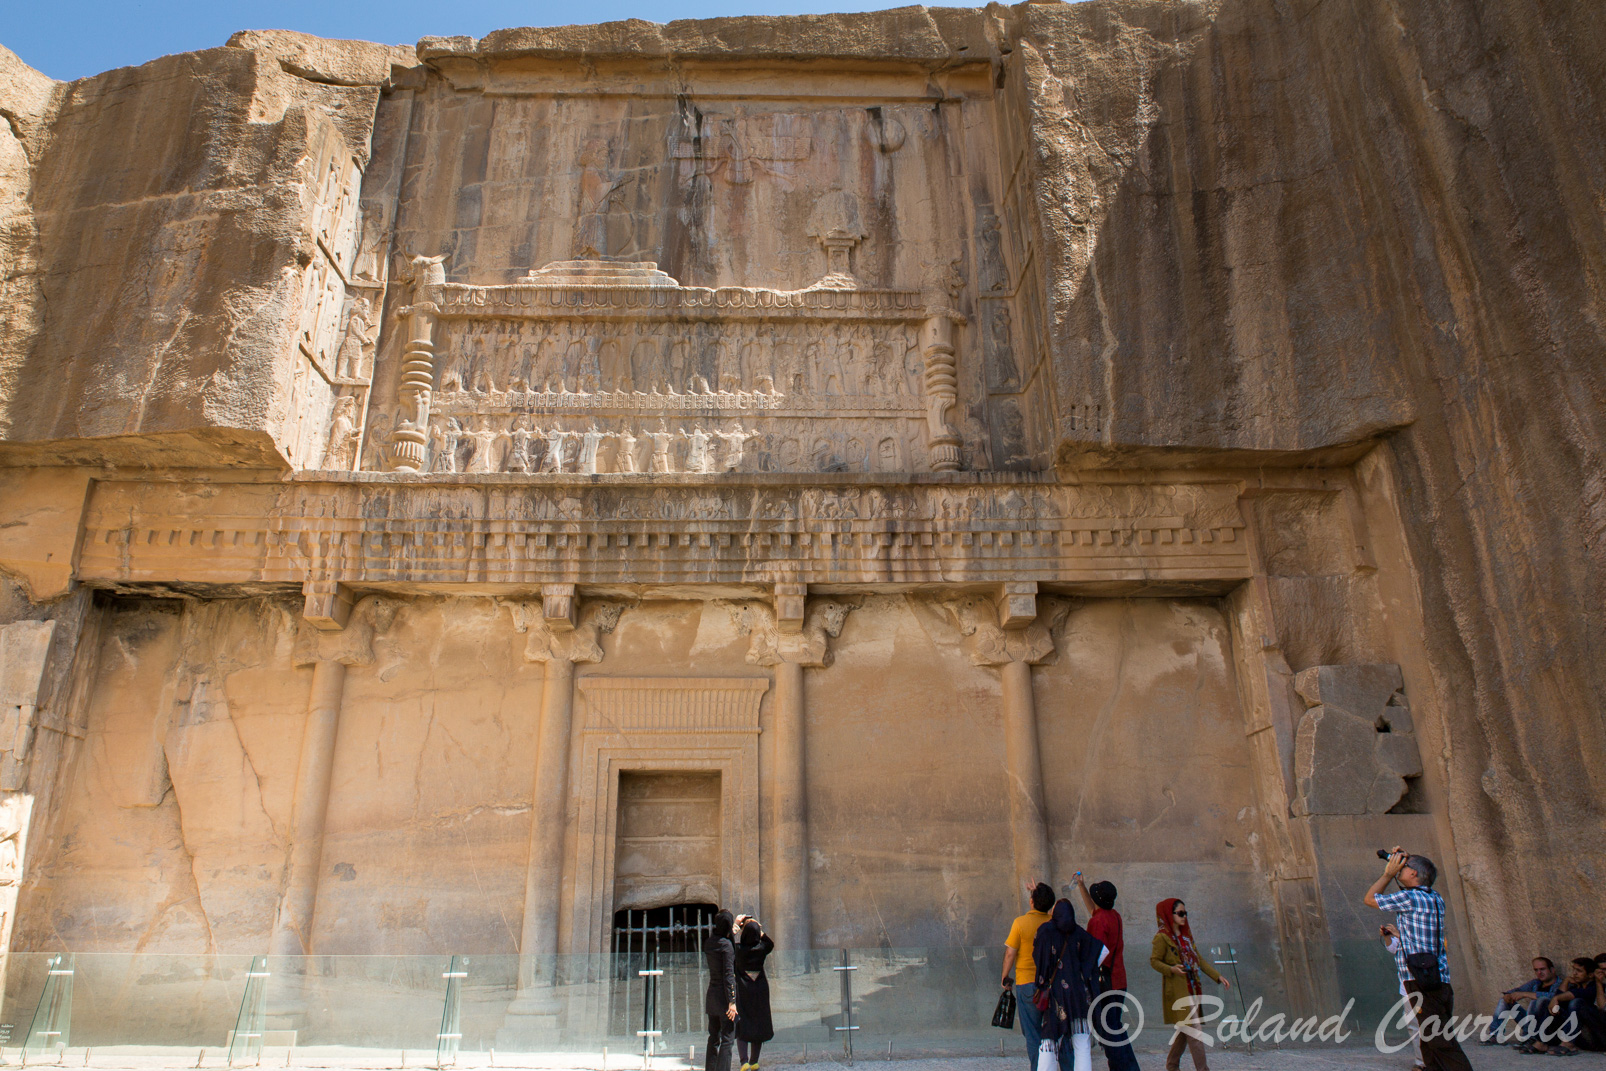 Persepolis : Les tombeaux d'Artaxerxès II et d'Artaxerxès III , creusés dans la montagne, surplombent le site d'une manière grandiose.  Ils sont décorés de bas-reliefs montrant le roi soutenu par les 28 nations vaincues, devant un autel de feu. Au-dessus de lui sont représentés le symbole ailé d’Ahura Mazda, la lune et le soleil.